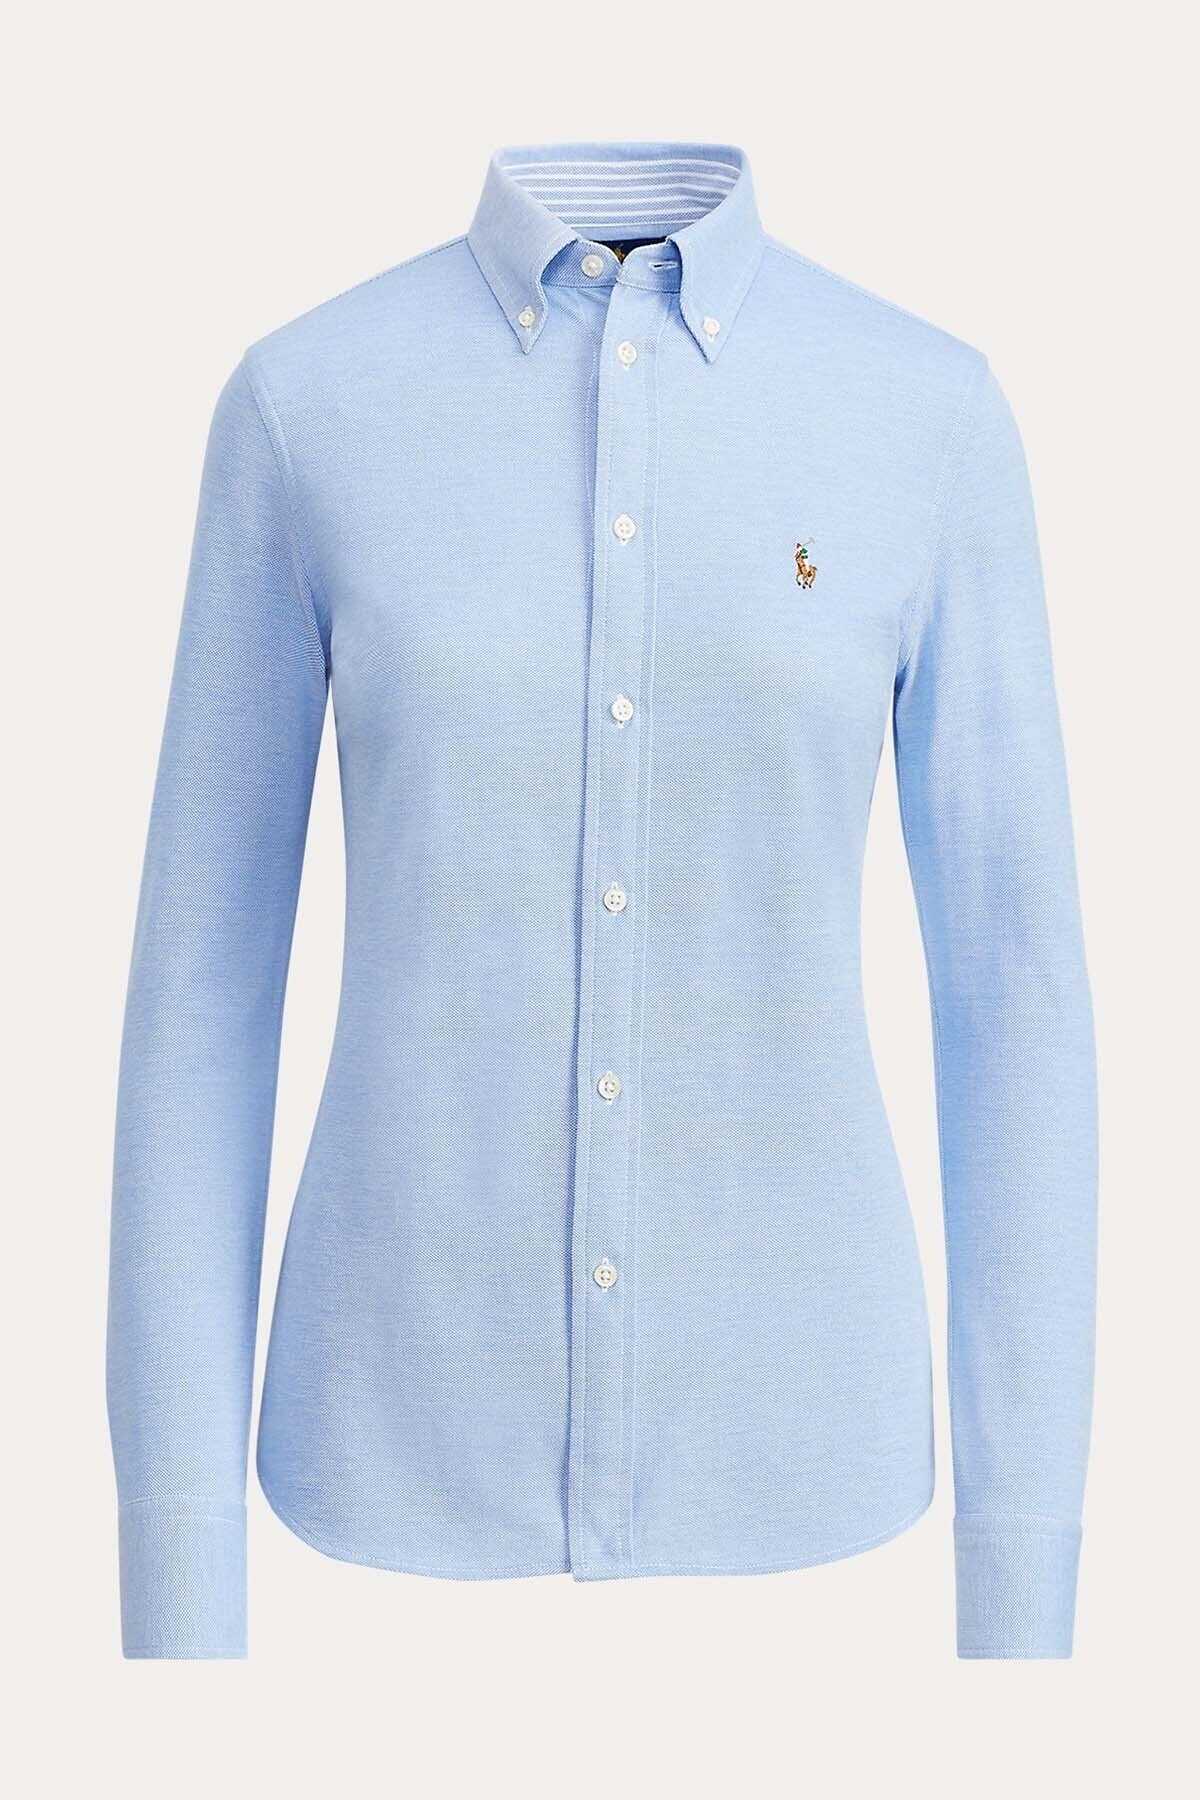 پیراهن آکسفورد زنانه یقه کلاسیک آبی برند Polo 